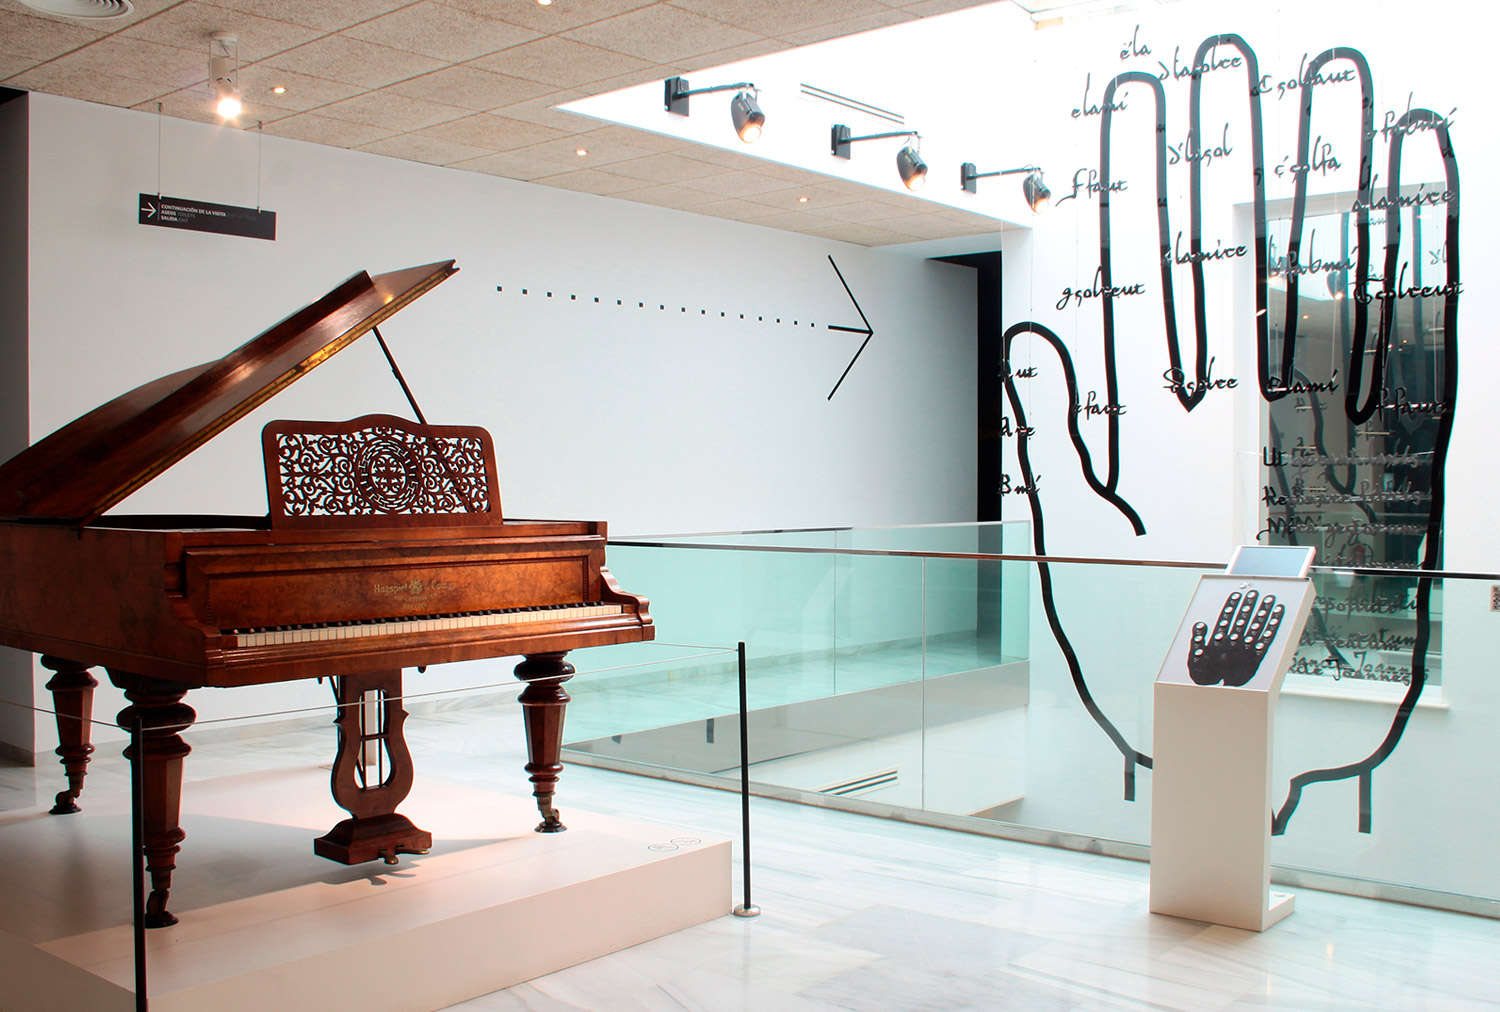 MIMMA Museo Interactivo de la Música Entorno Hotel Palacete de Álamos Málaga